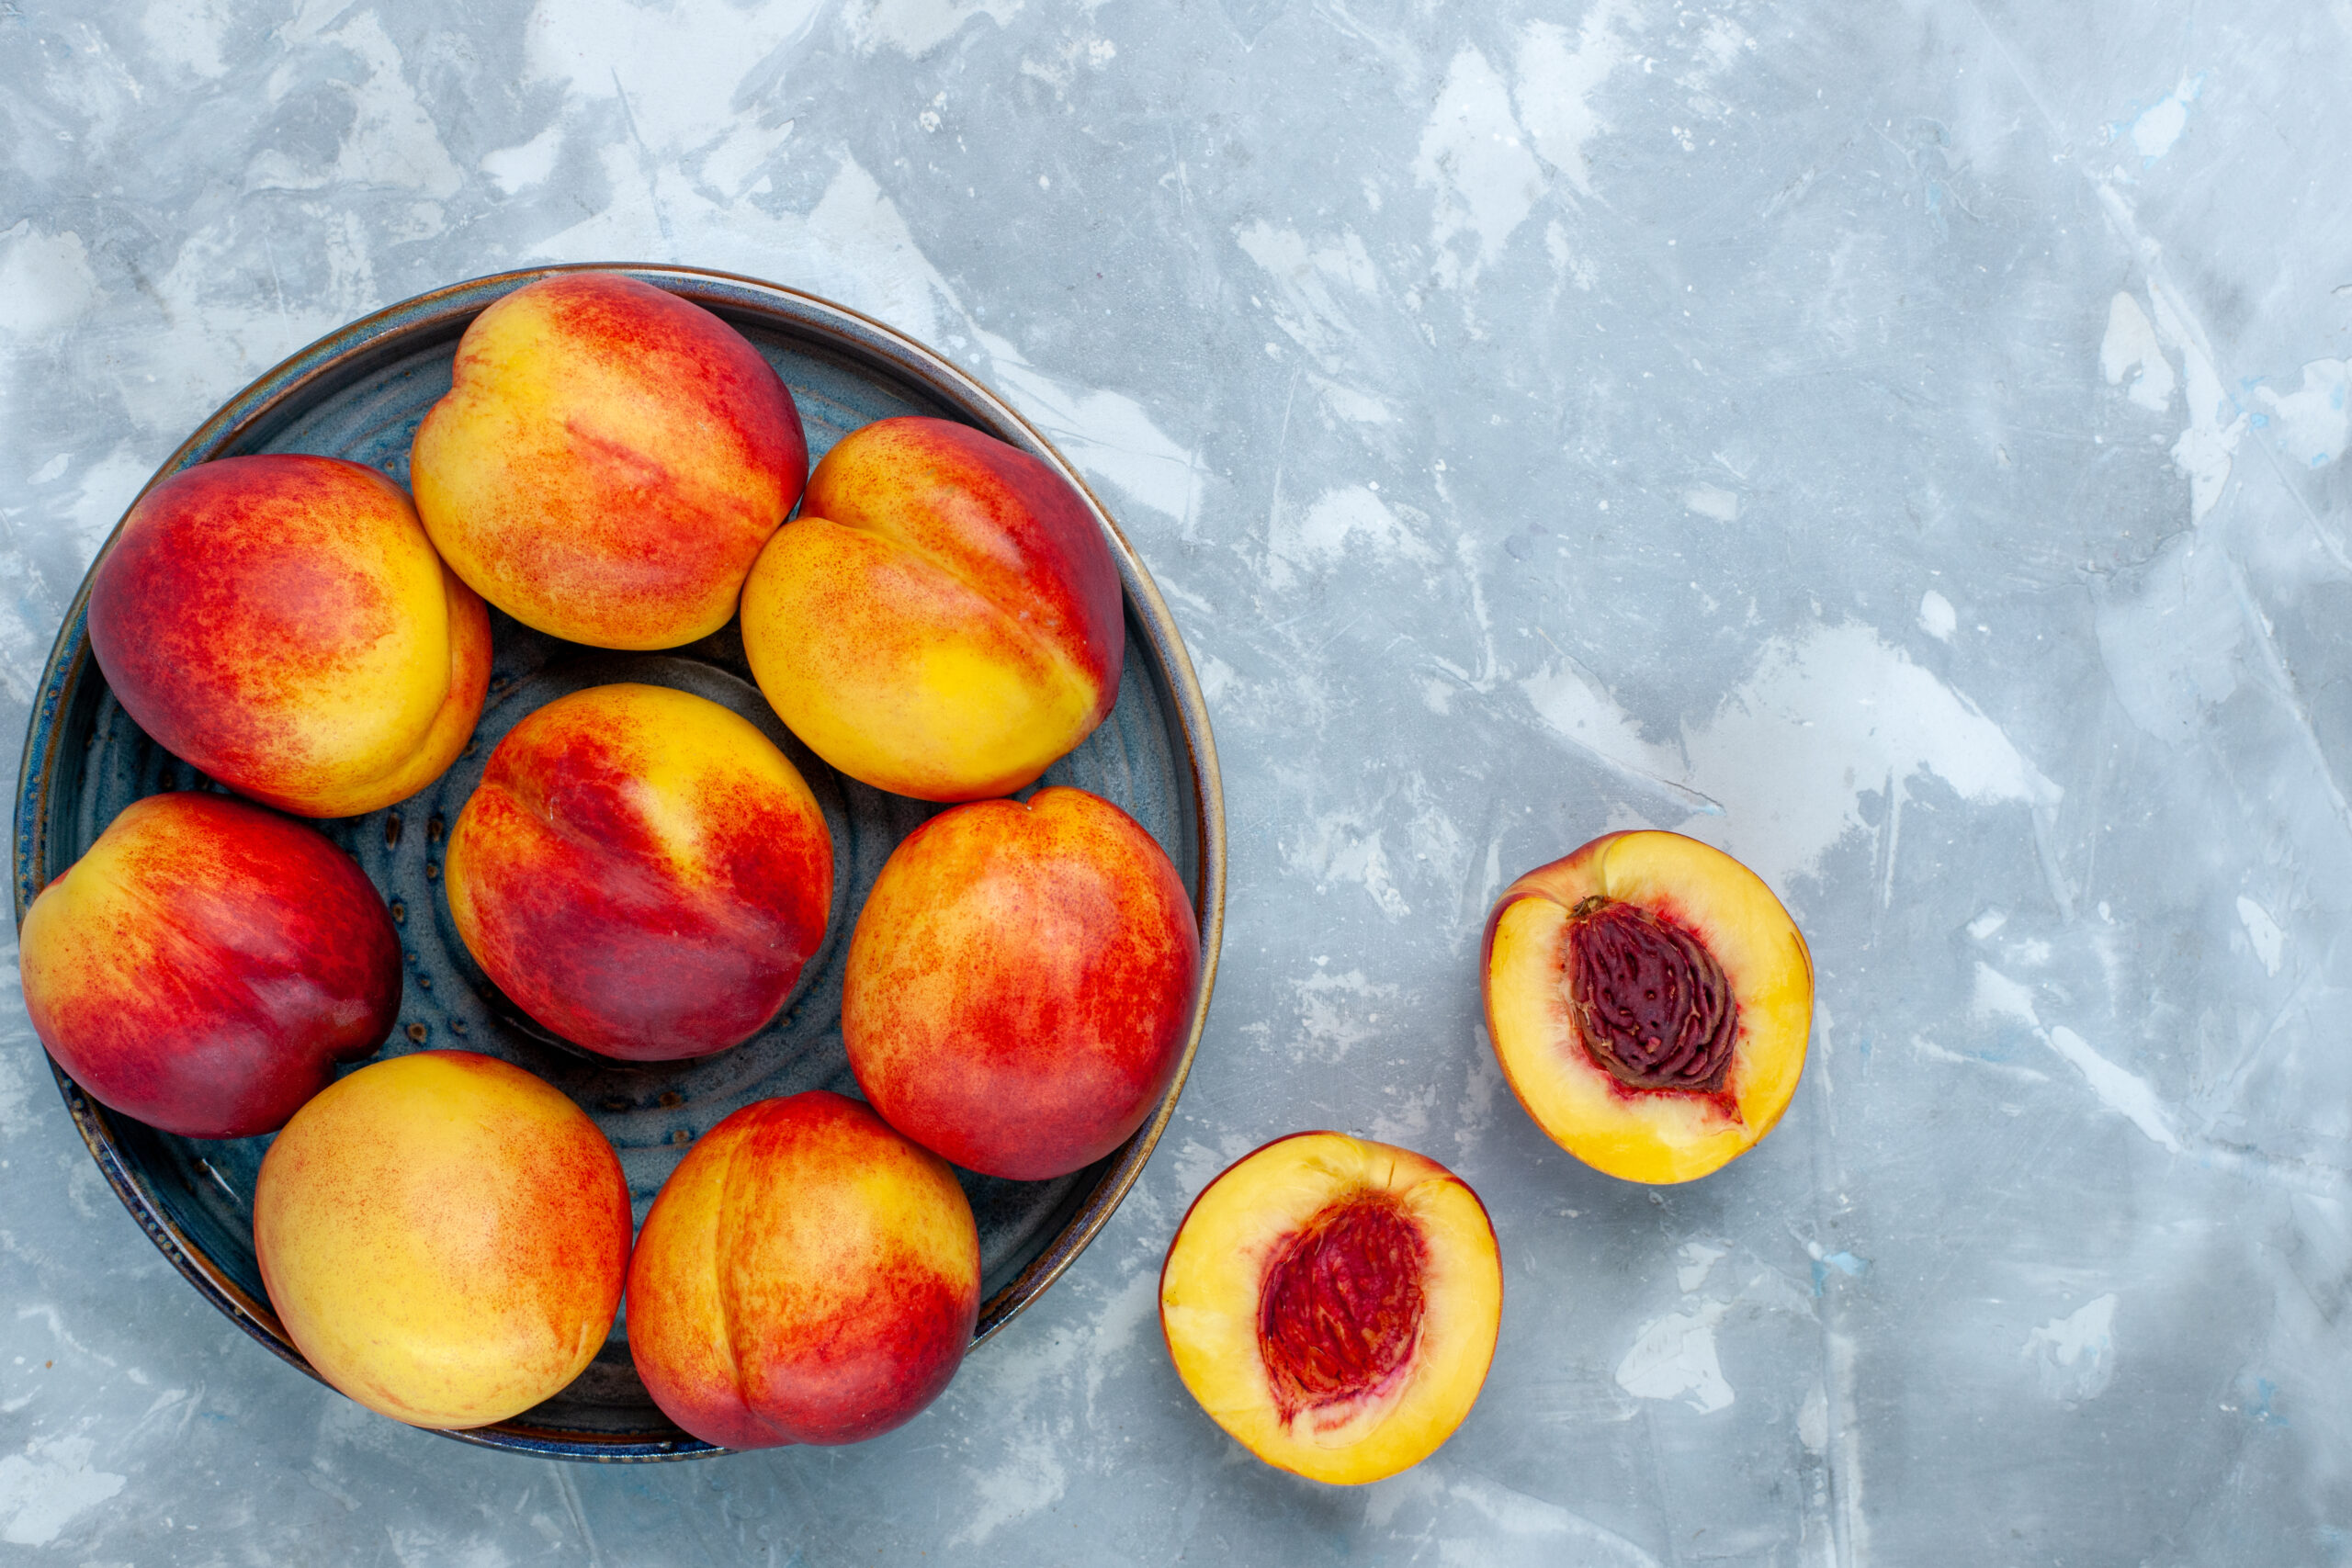 Jei norite sveikų akių, odos ir širdies, metas prisiminti vieną populiarų vasaros vaisių